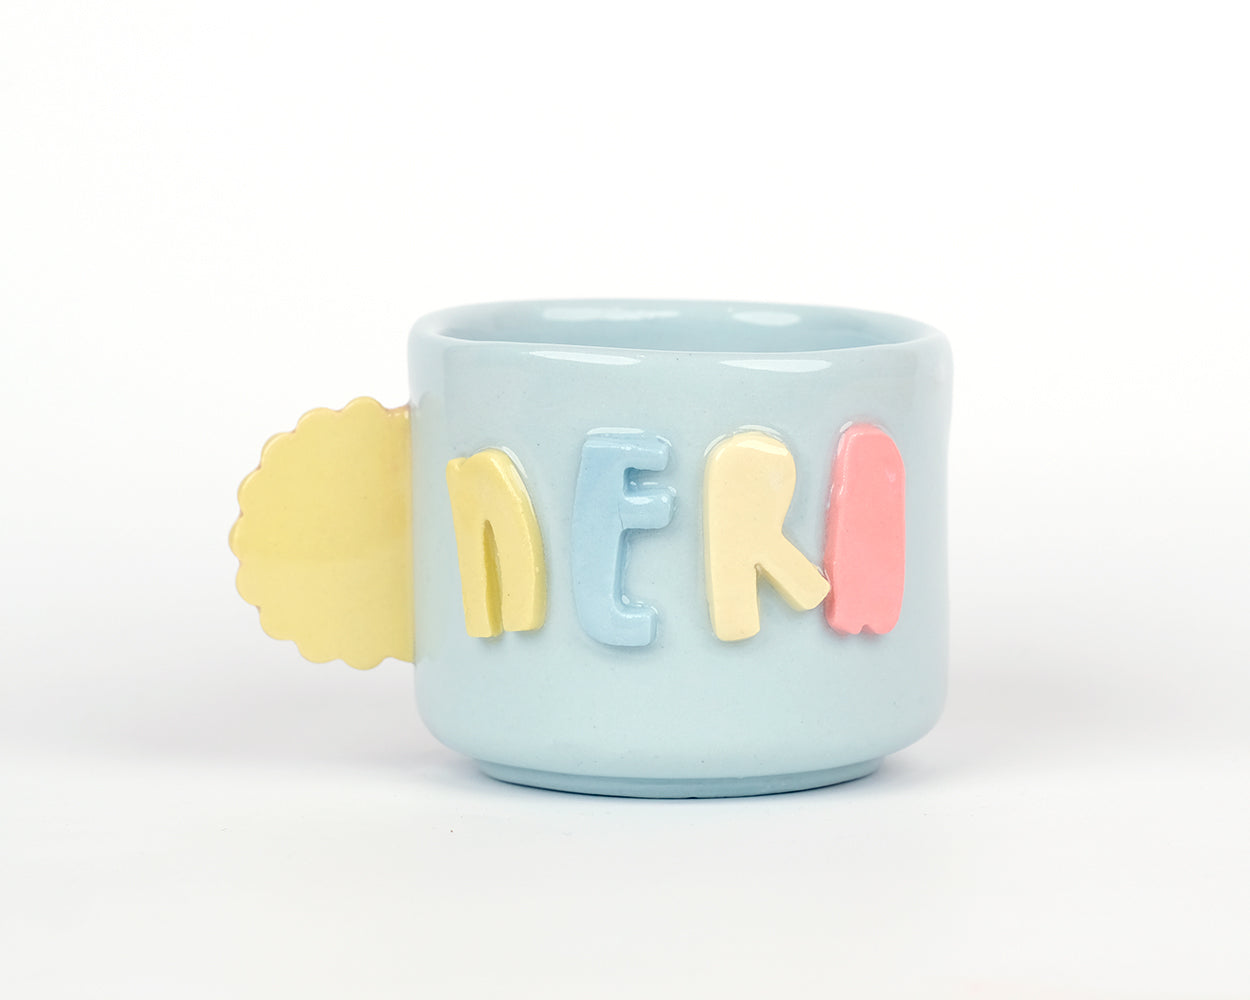 Nerd - Teacup mug